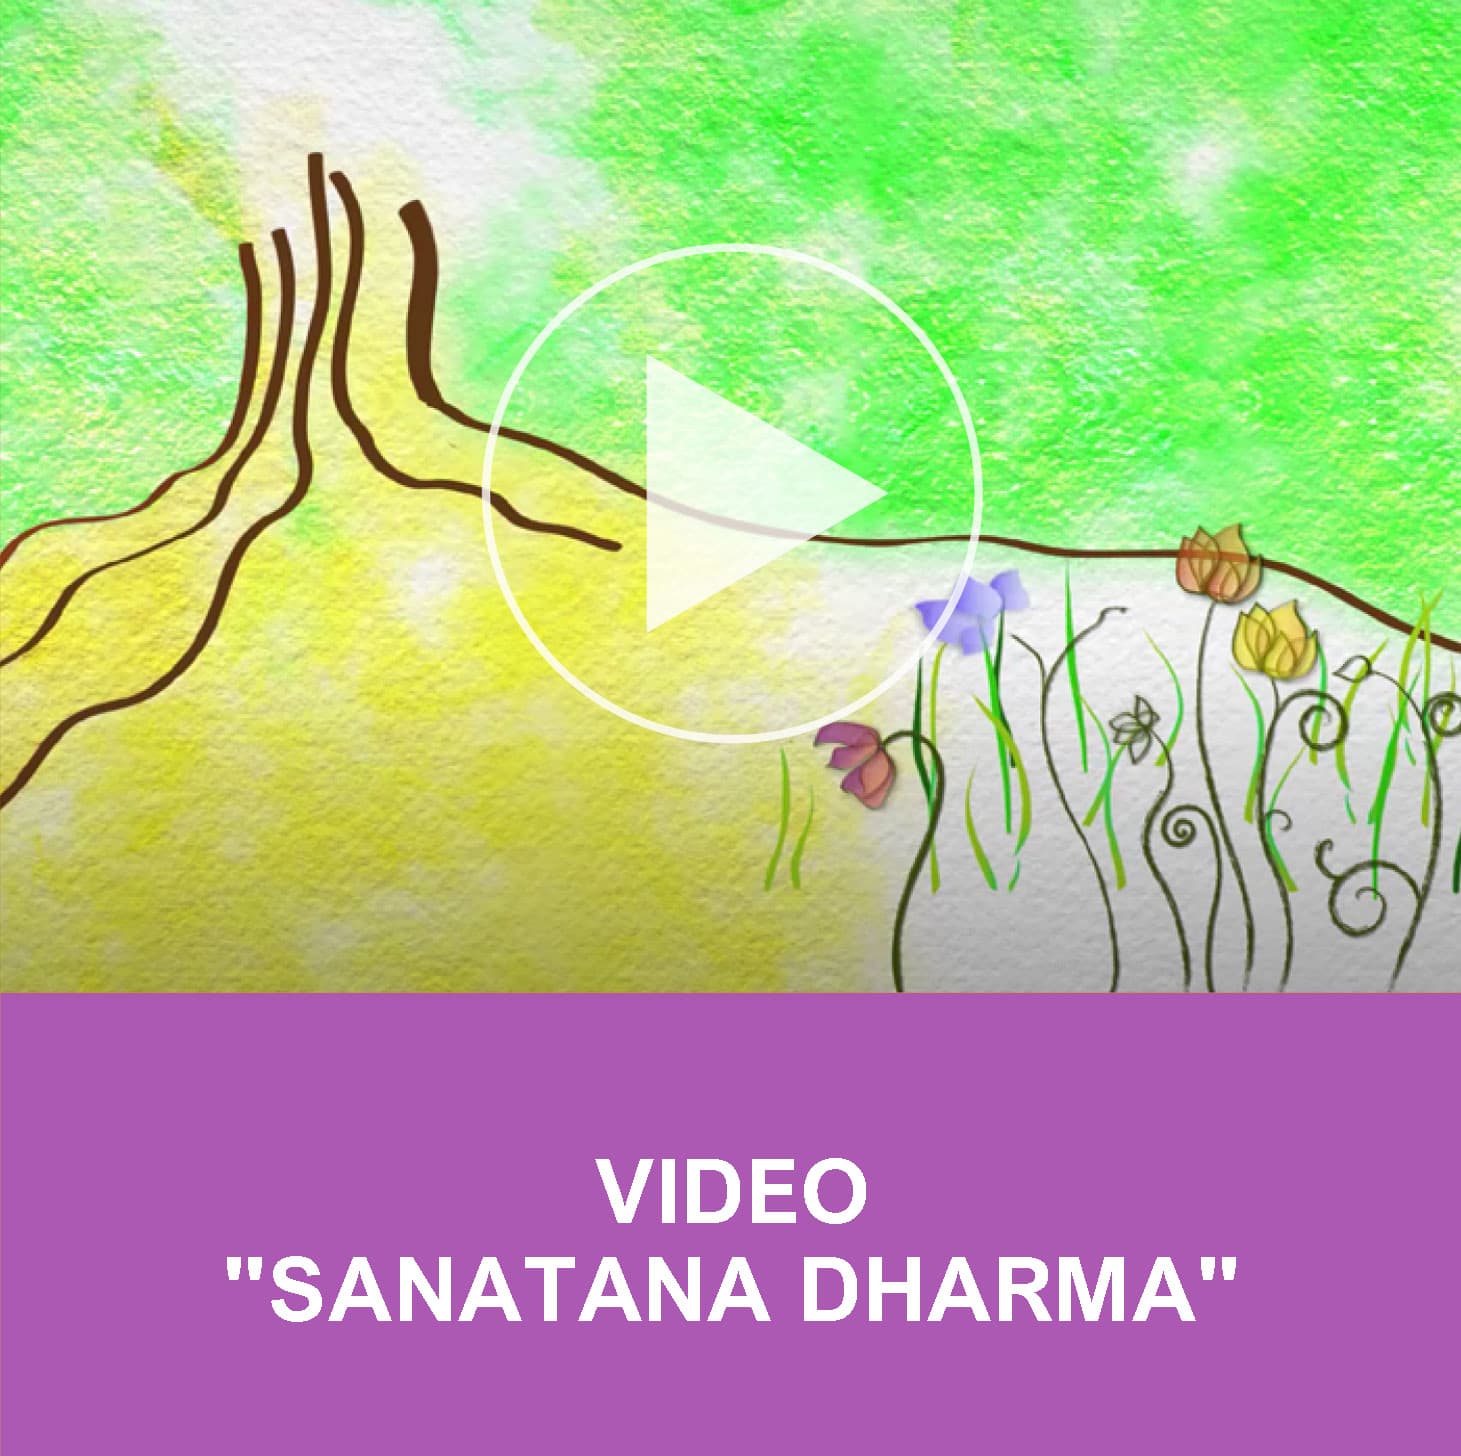 Sanatana Dharma Brasil: Símbolos no Sanatana Dharma